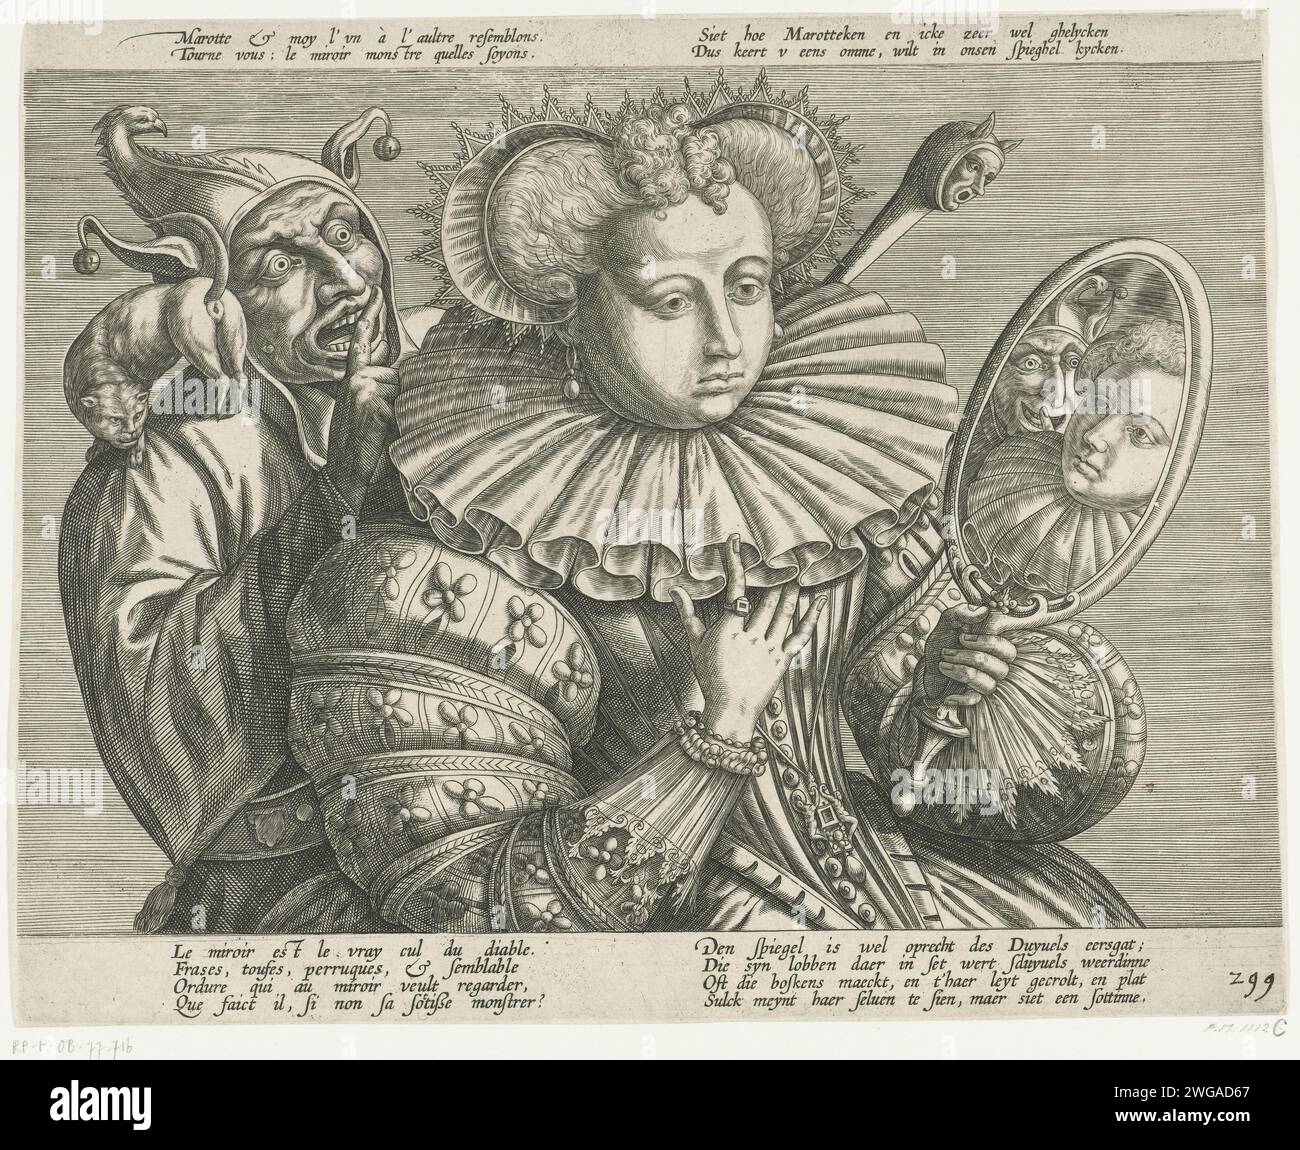 Femme avec miroir et fou : dessin animé sur le précieux remède plissé rigide, env. 1600, 1600 - 1624 imprimer dessin animé sur la vanité, montré dans des vêtements luxueux. Une femme habillée élégante, à moitié aimée, est habillée en robe à large col plissé : signe de statut et de richesse. Comme bijoux, elle porte des boucles d'oreilles, une bague et des bracelets. En regardant dans le miroir à main, elle voit non seulement sa propre image miroir, mais aussi la tête de la secousse derrière elle. Il y a un chat sur l'épaule du Nar qui montre son bas, un marot dans sa main droite. Le NAR exprime le texte qui peut être lu en haut : Sie how marotte Banque D'Images